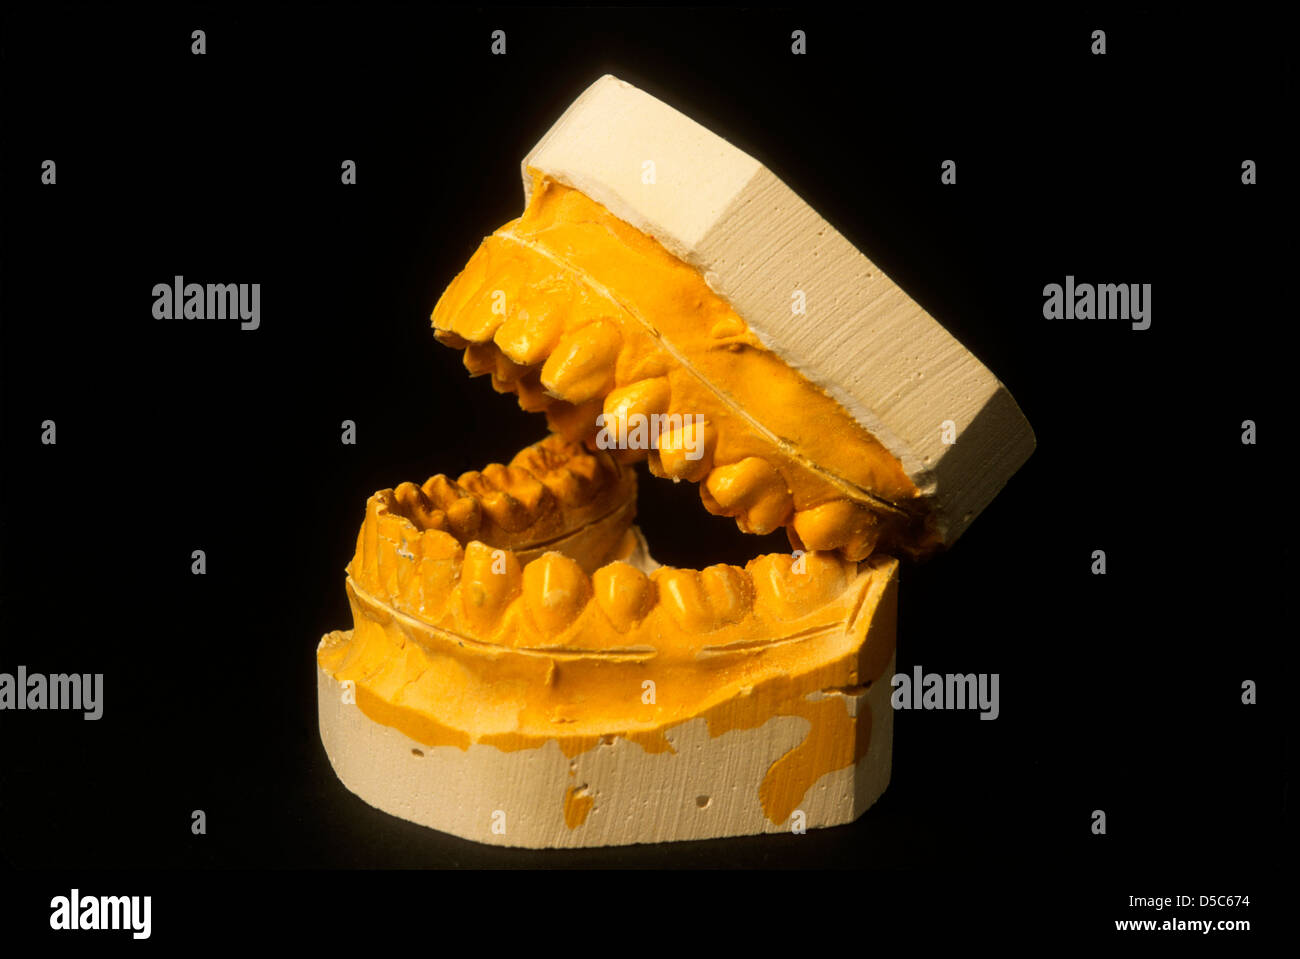 Dental Cast Model opened. Stock Photo